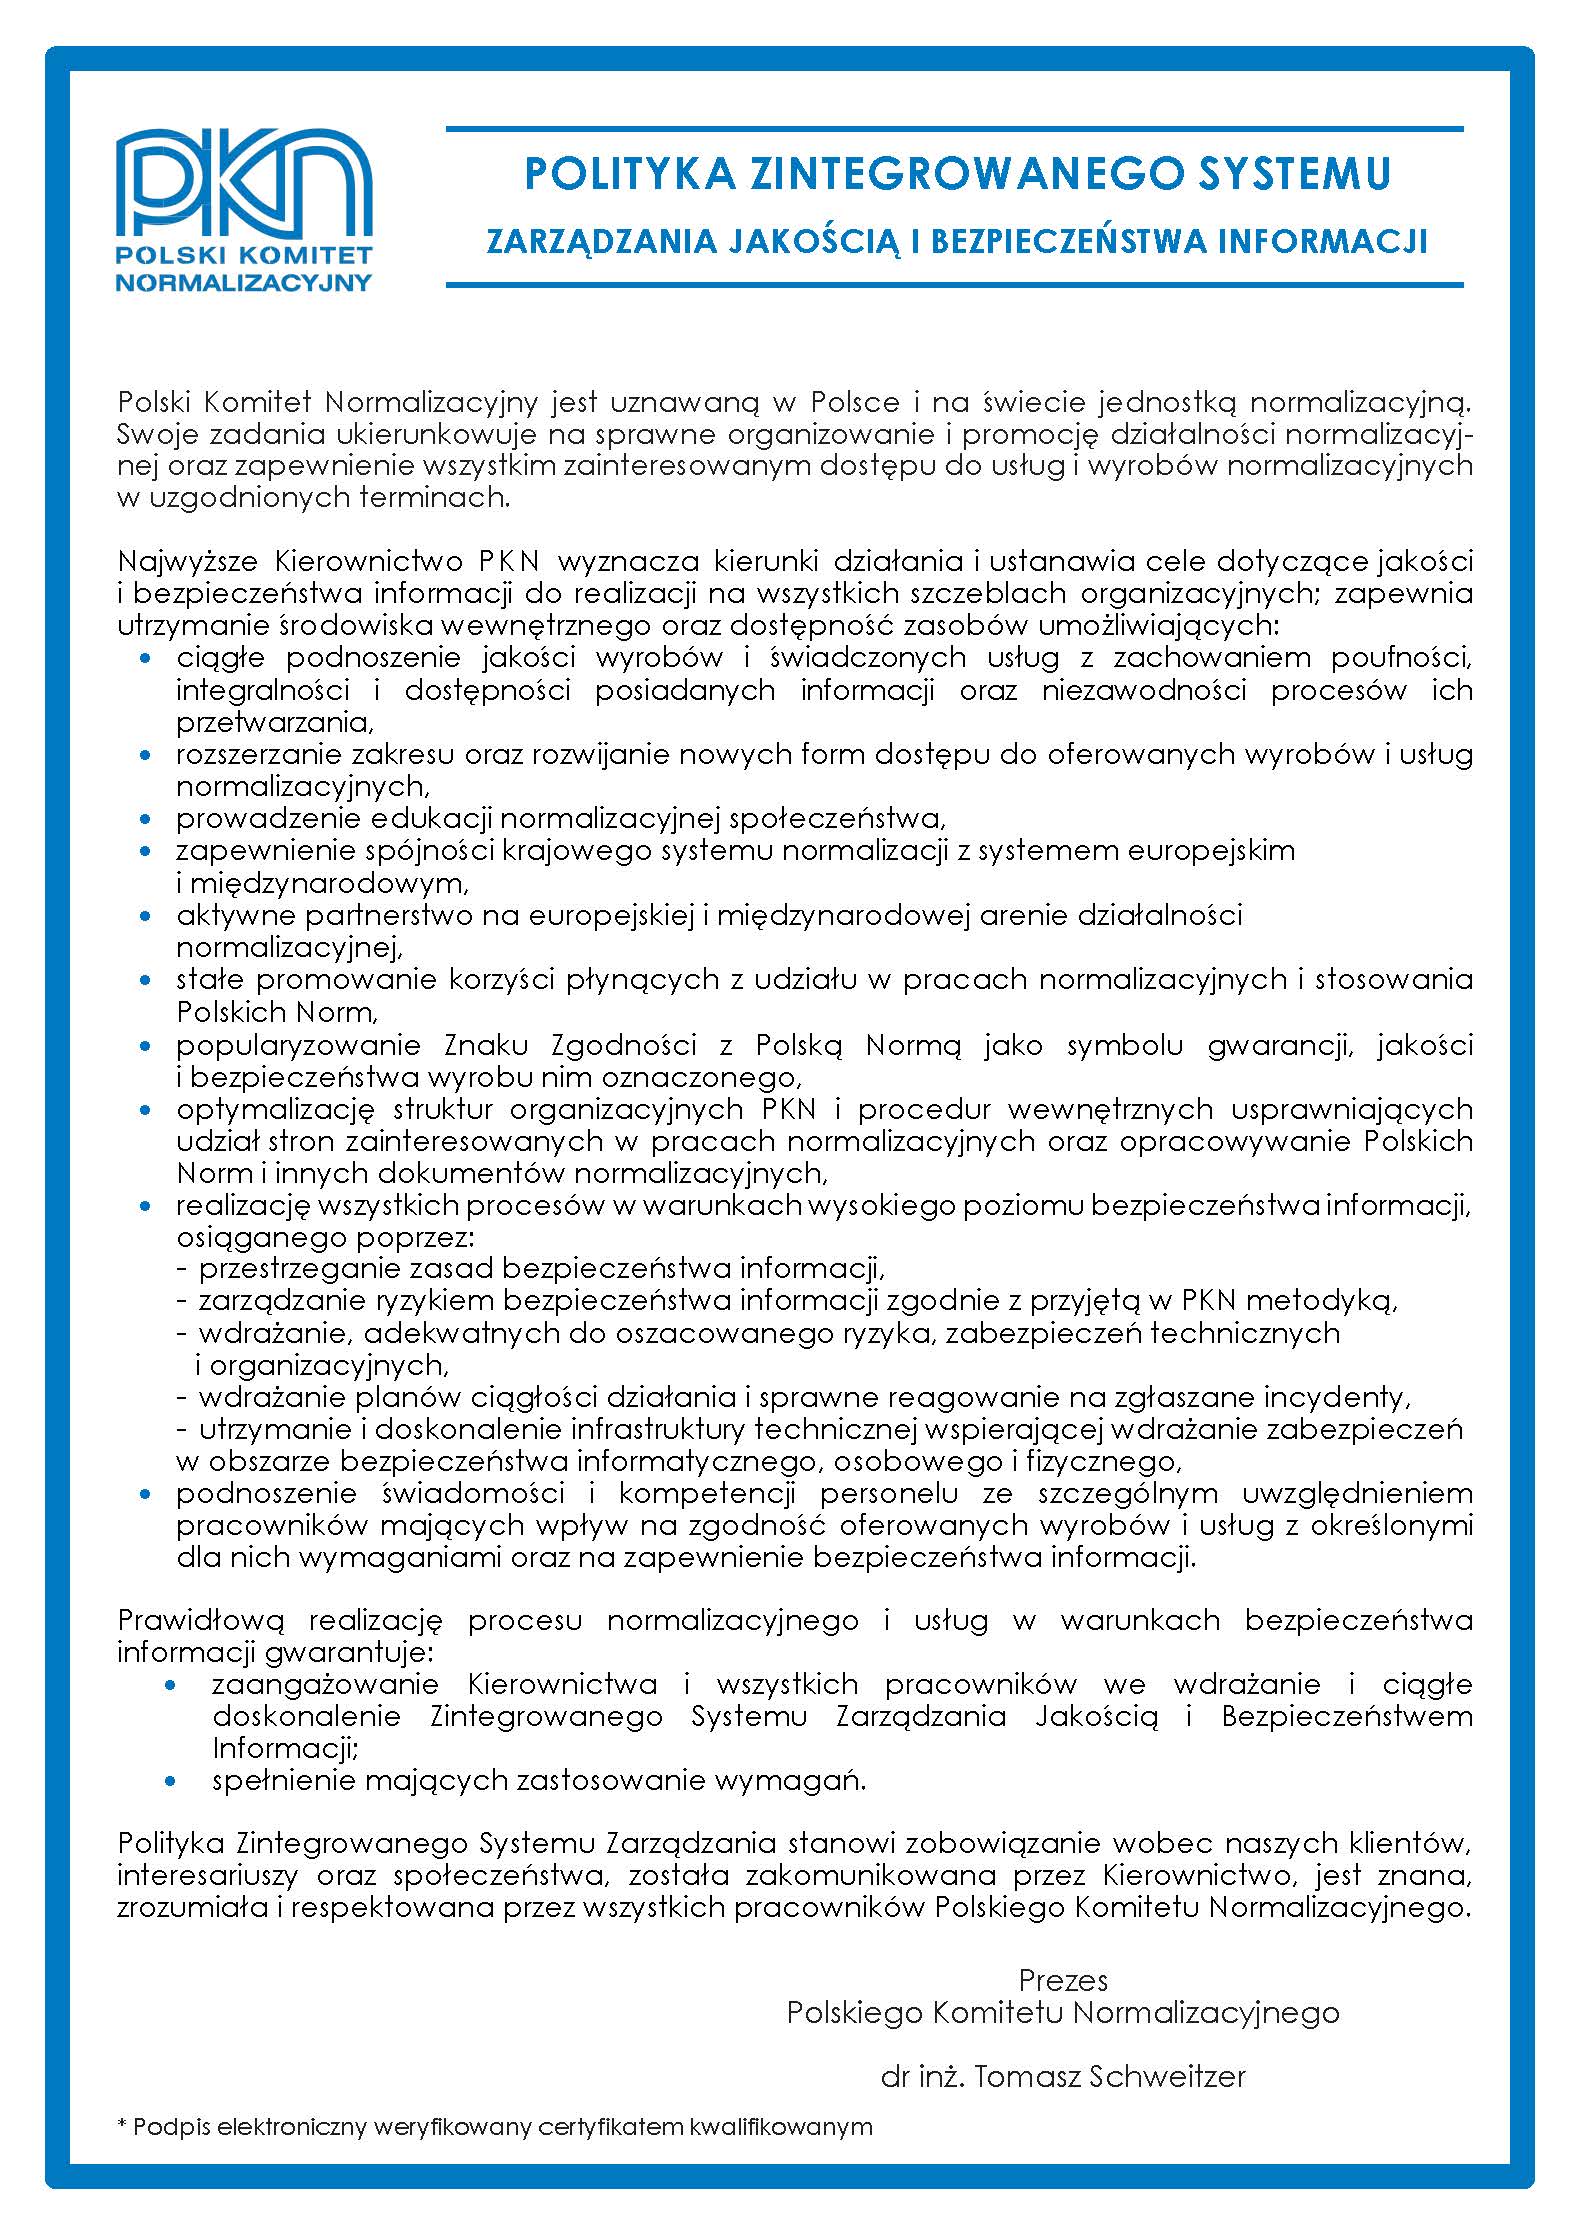 Print screen Polityki Zintegrowanego Systemu Zarządzania Jakością i Bezpieczeństwem Informacji, otwierający ten dokument w formie PDF.